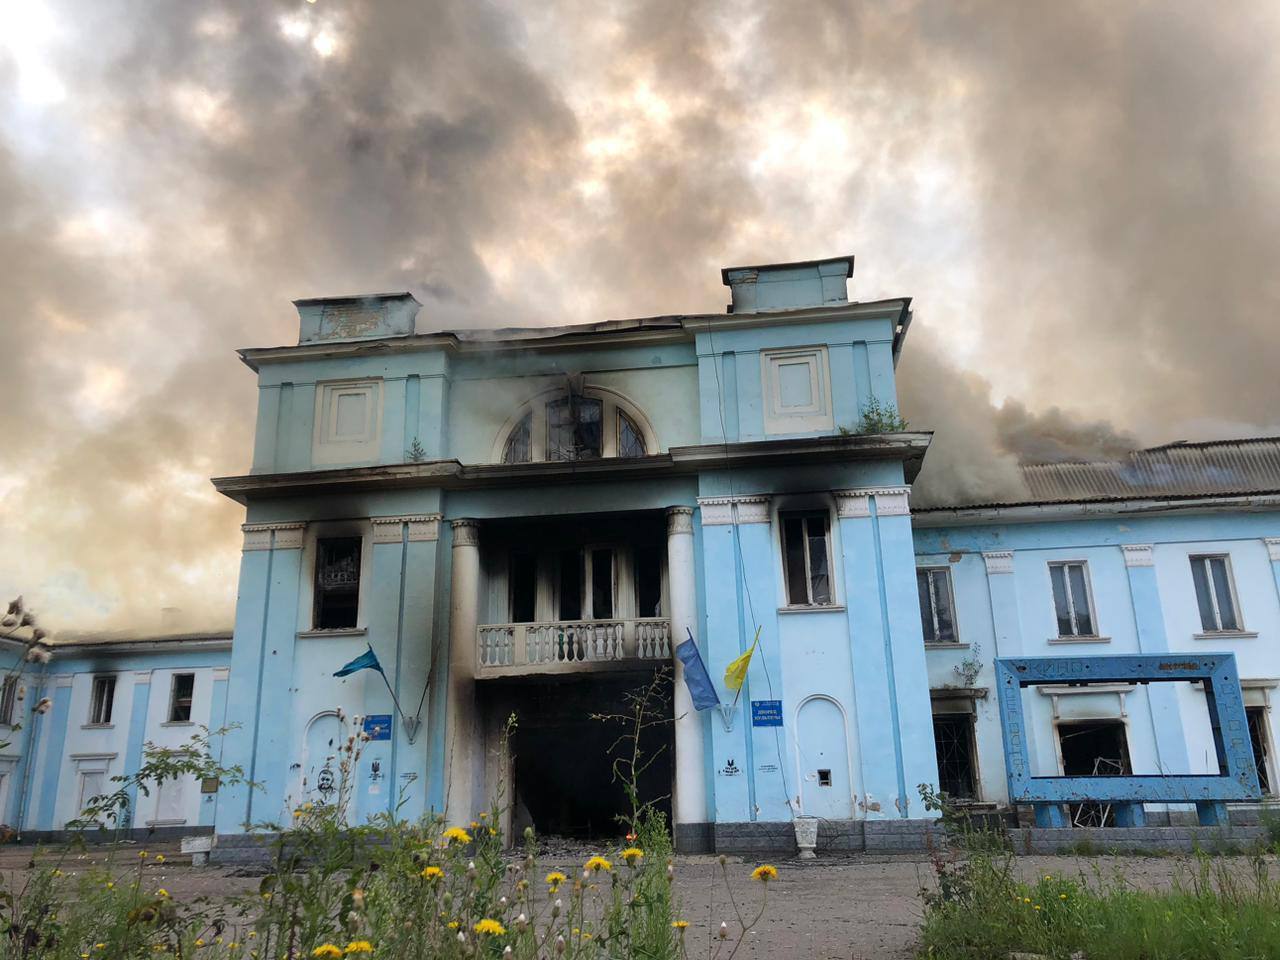 Росія атакувала касетними снарядами Палац культури у Часовому Ярі: будівля згоріла. Фото